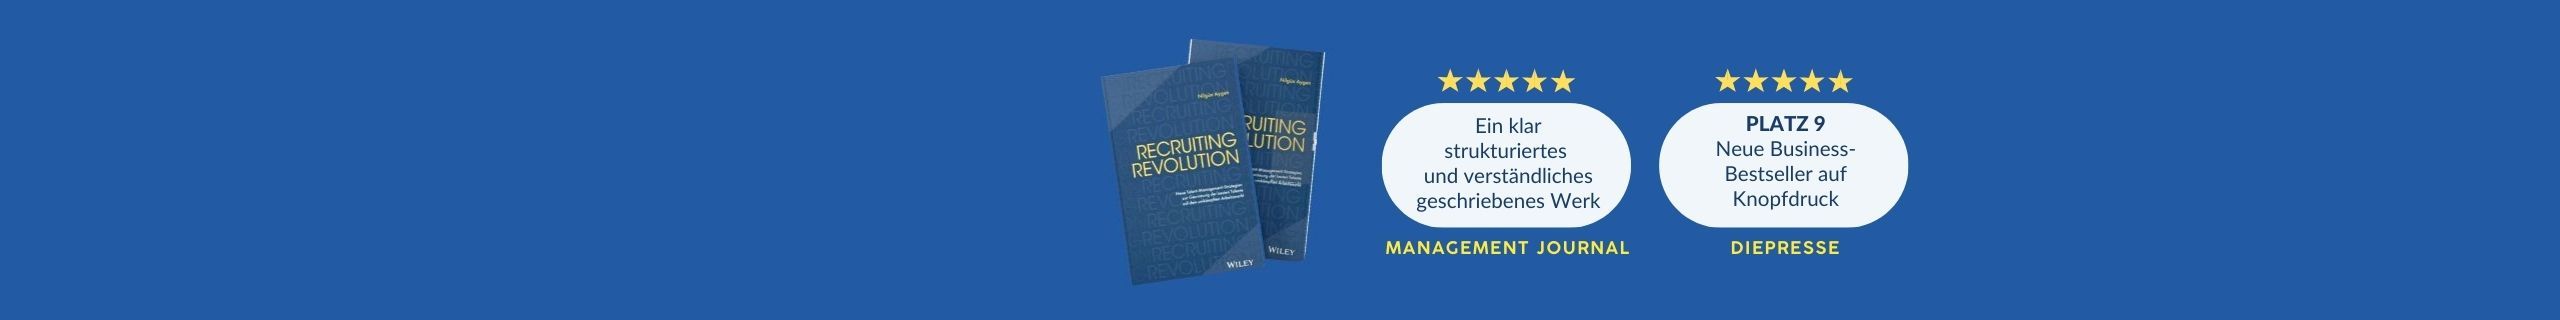 RECRUITING REVOLUTION: <br> Neue Talent-Management-Strategien zur Gewinnung der besten Talente <BR>auf dem umkämpften Arbeitsmarkt